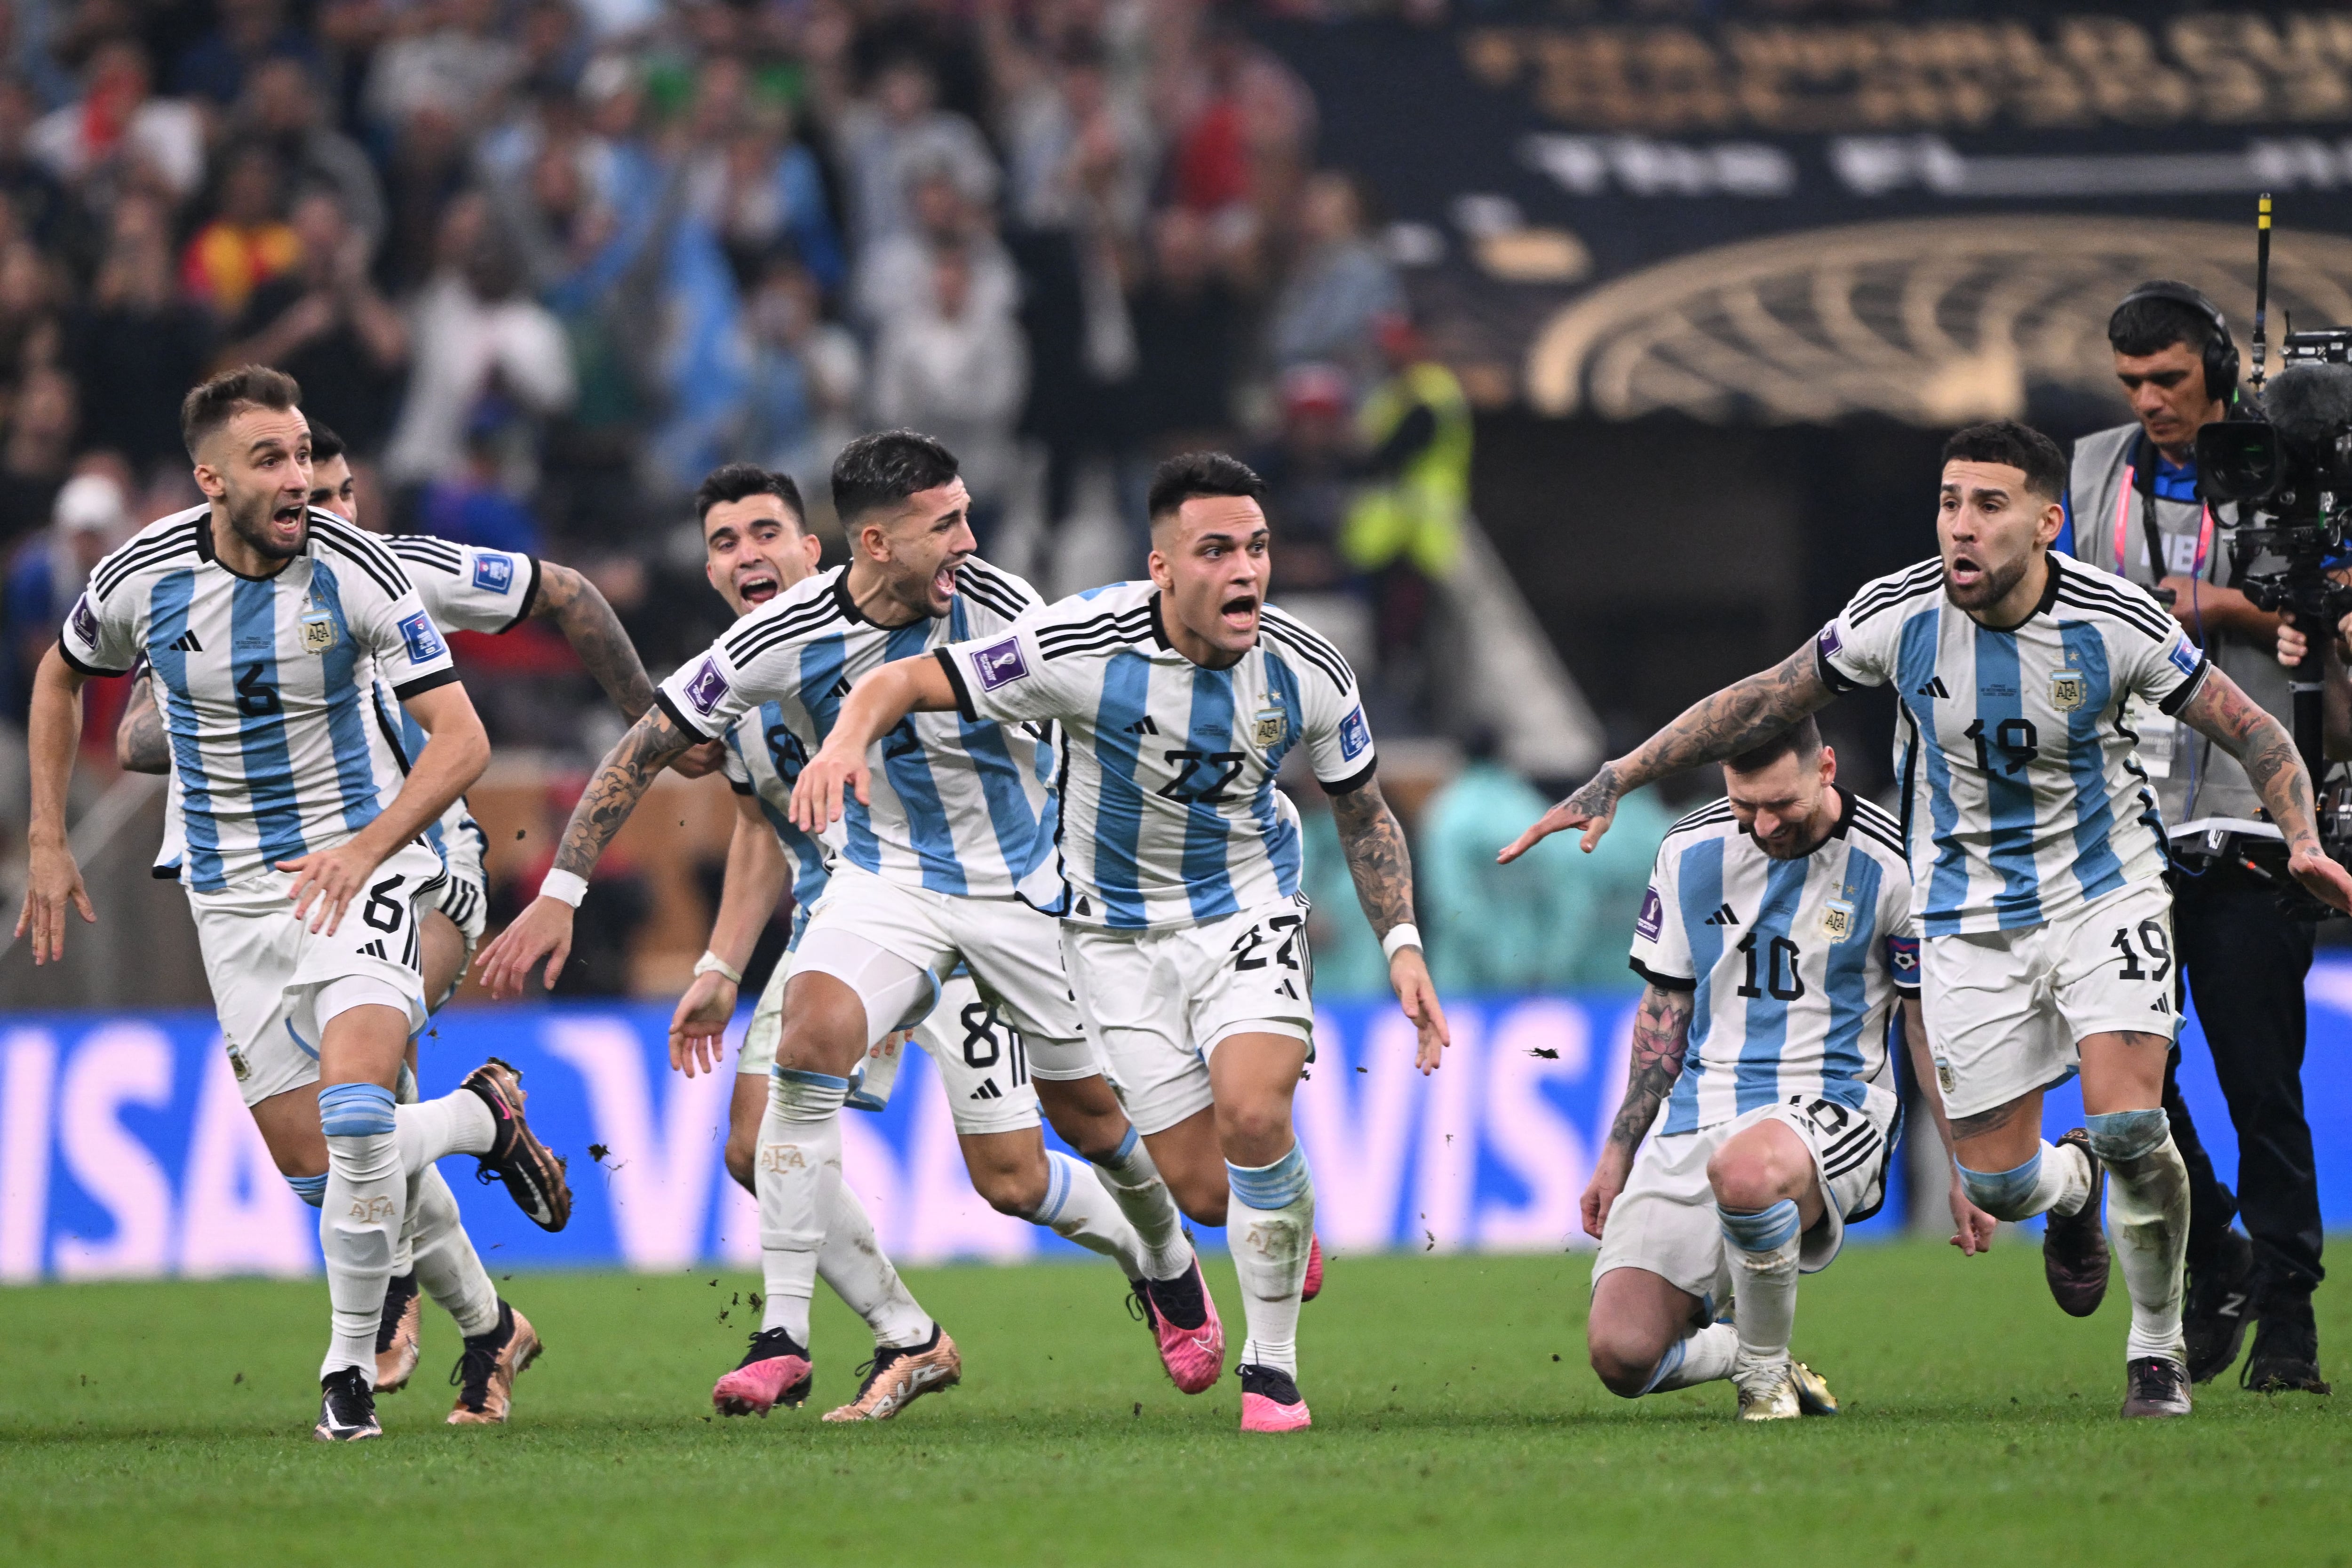 Todo terminó. El penal decisivo fue anotado. Argentina corre hacia la gloria en Qatar 2022.